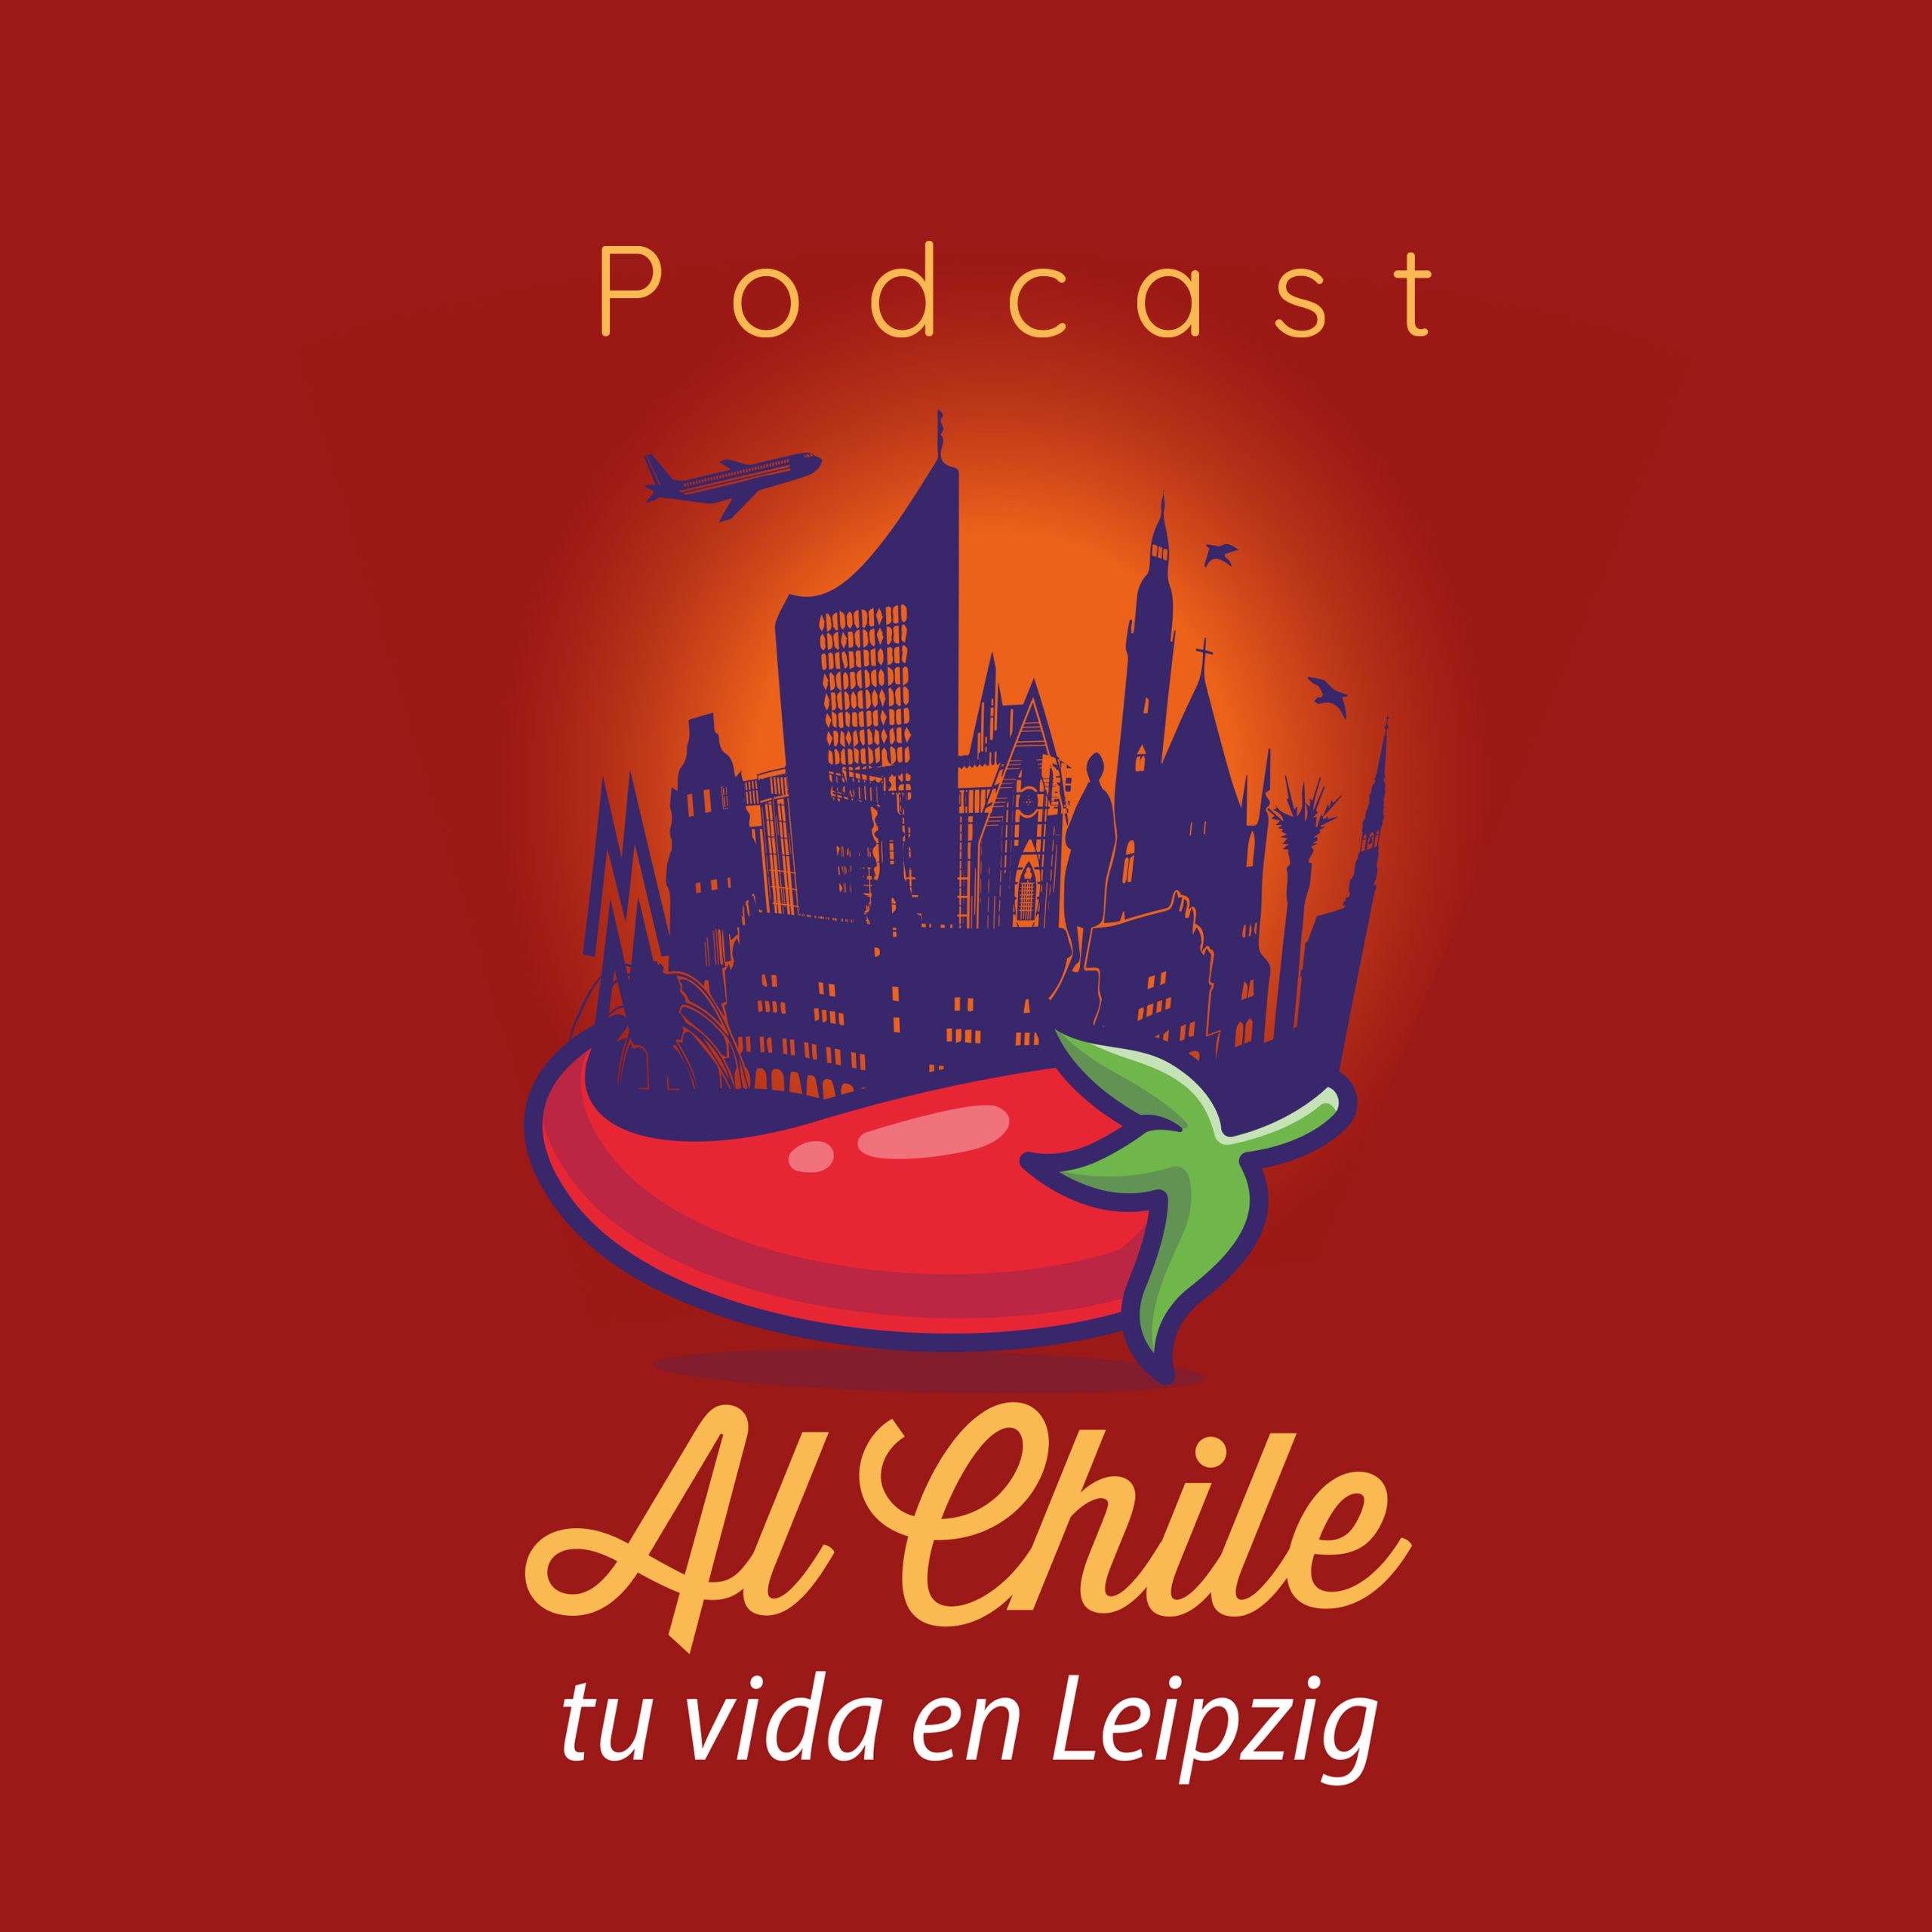 Logo of the new Spanish-language podcast Al Chile! 🌶️ Tu vida en Leipzig. Image courtesy of Carolin Wilms